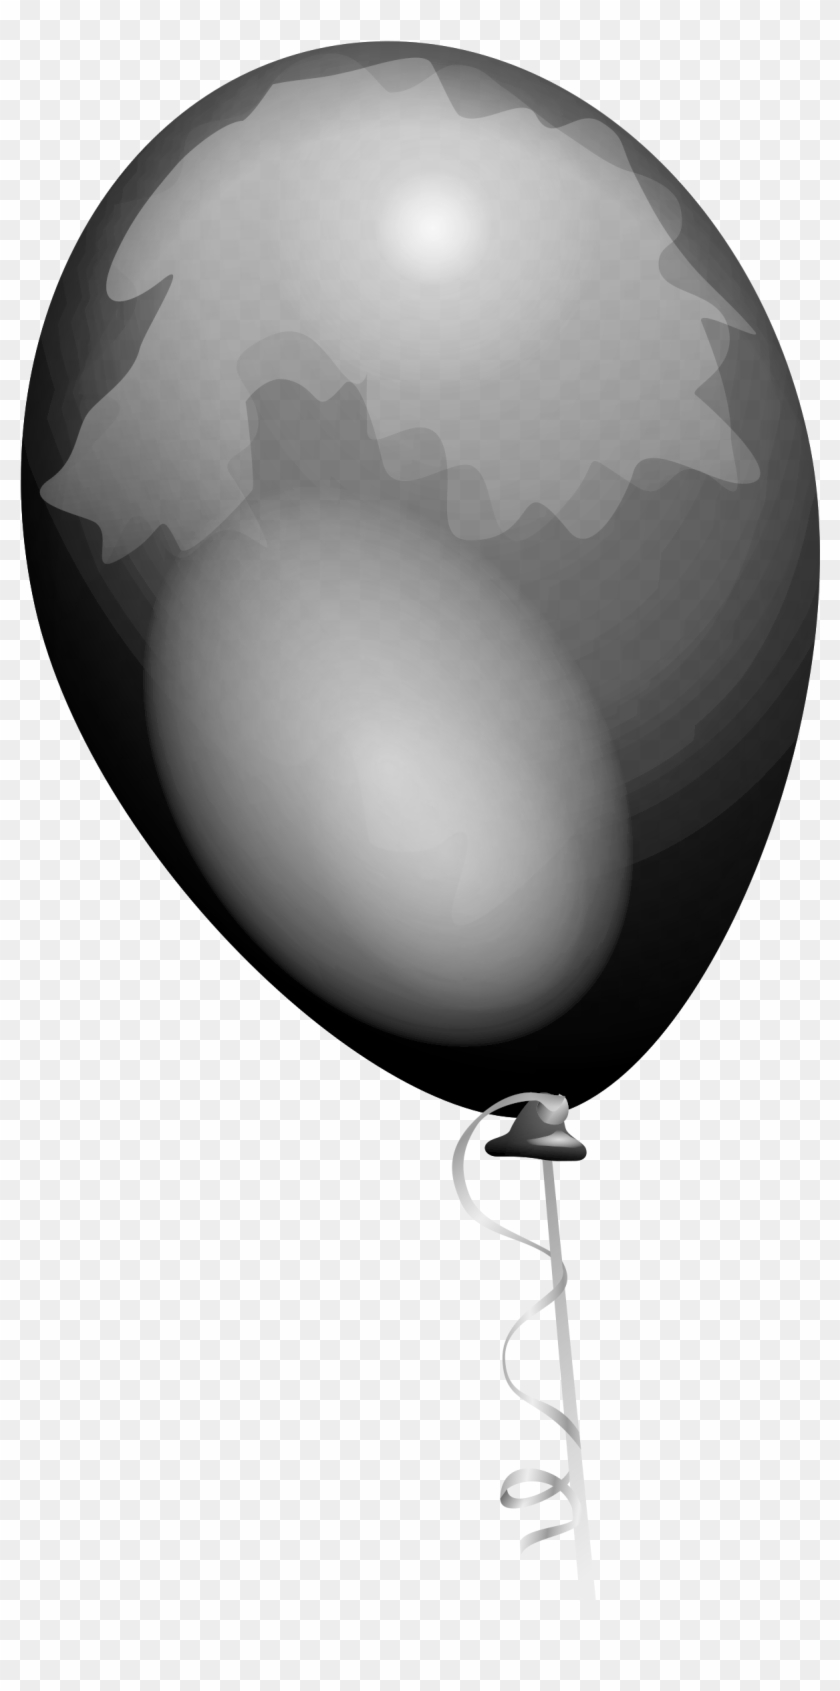 clipart balloon grey